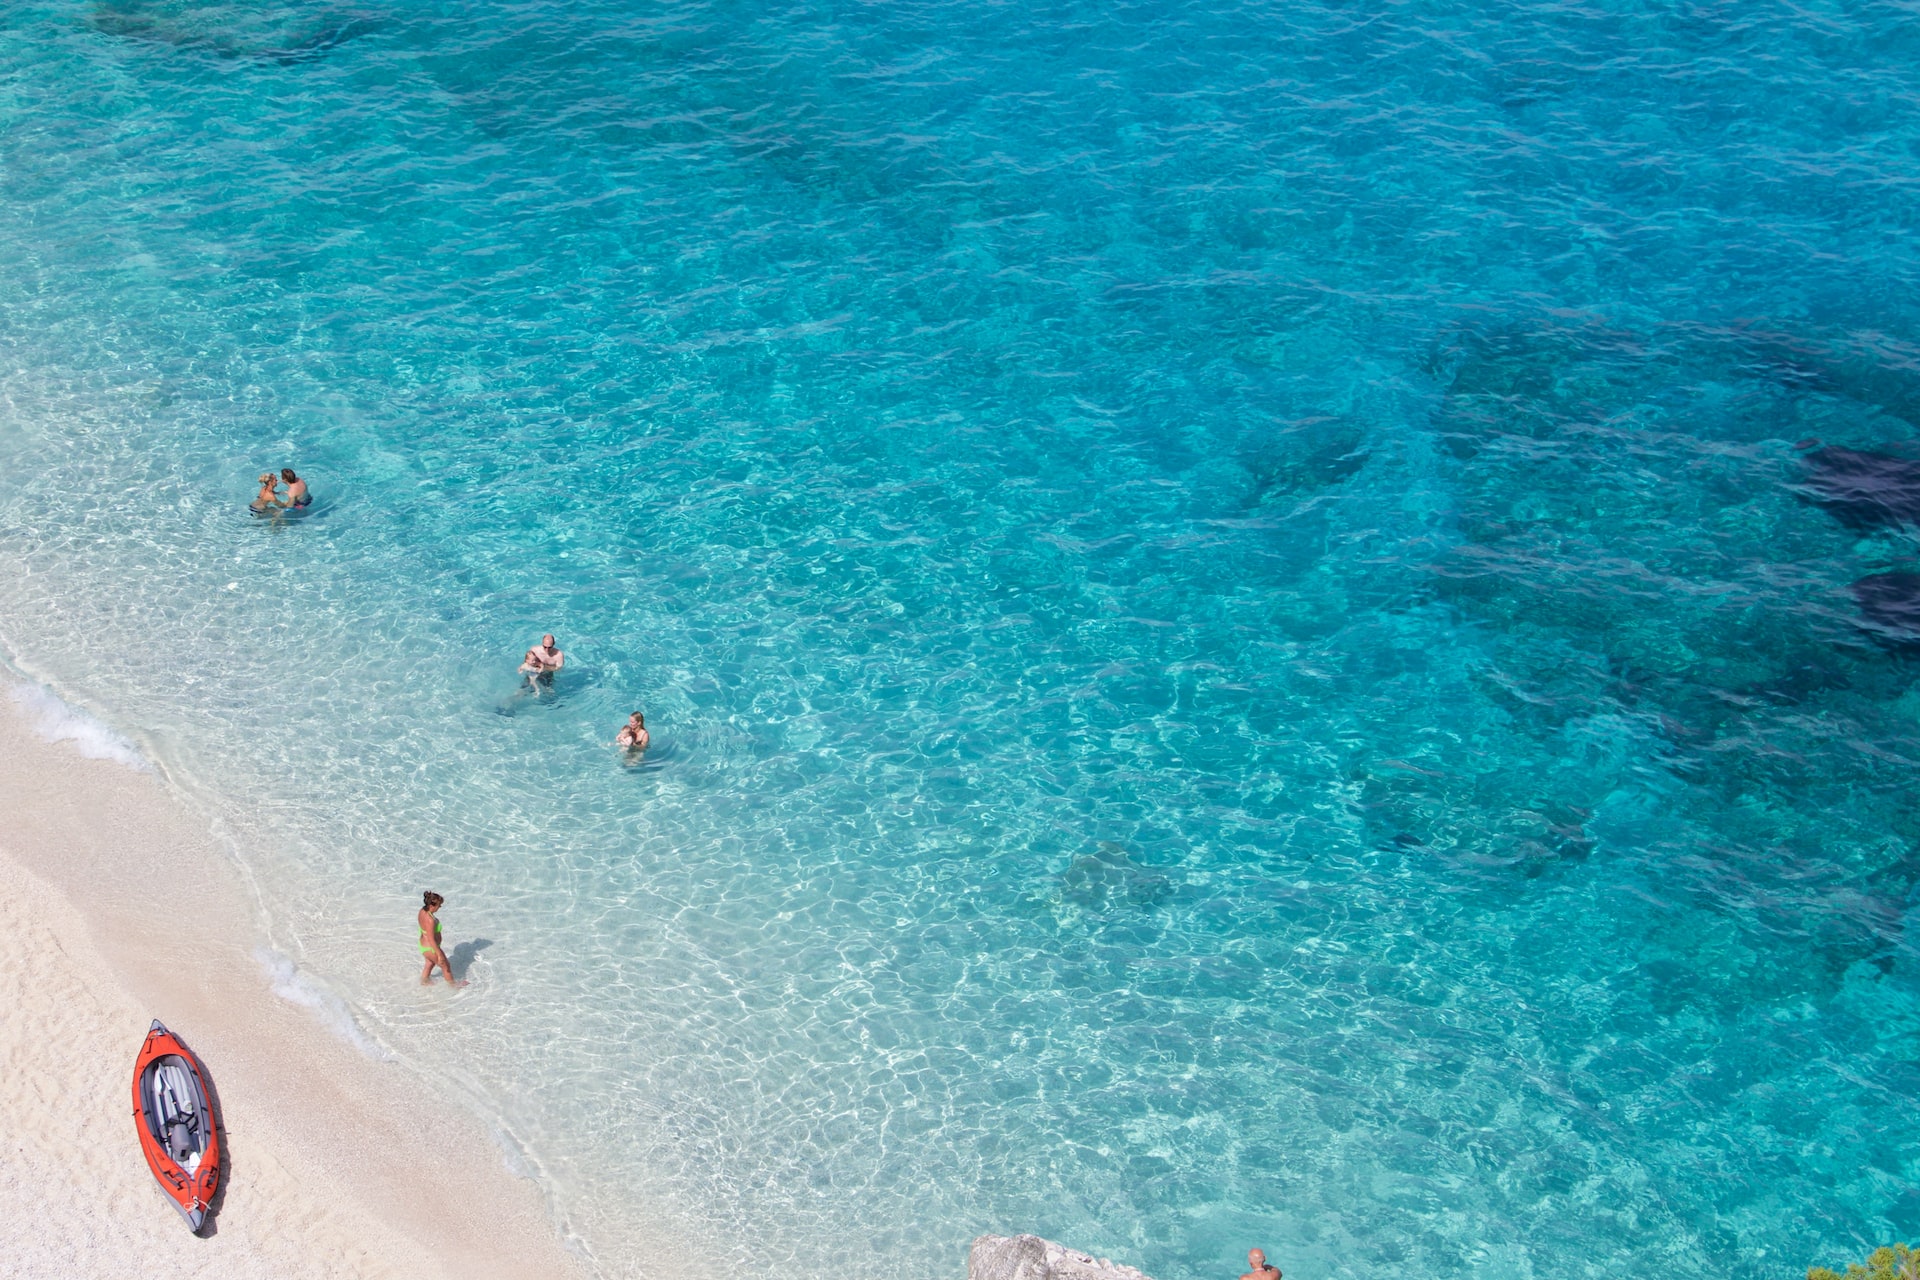 The Beautiful Italian Island Sardinia in Mediterranean Sea Stock